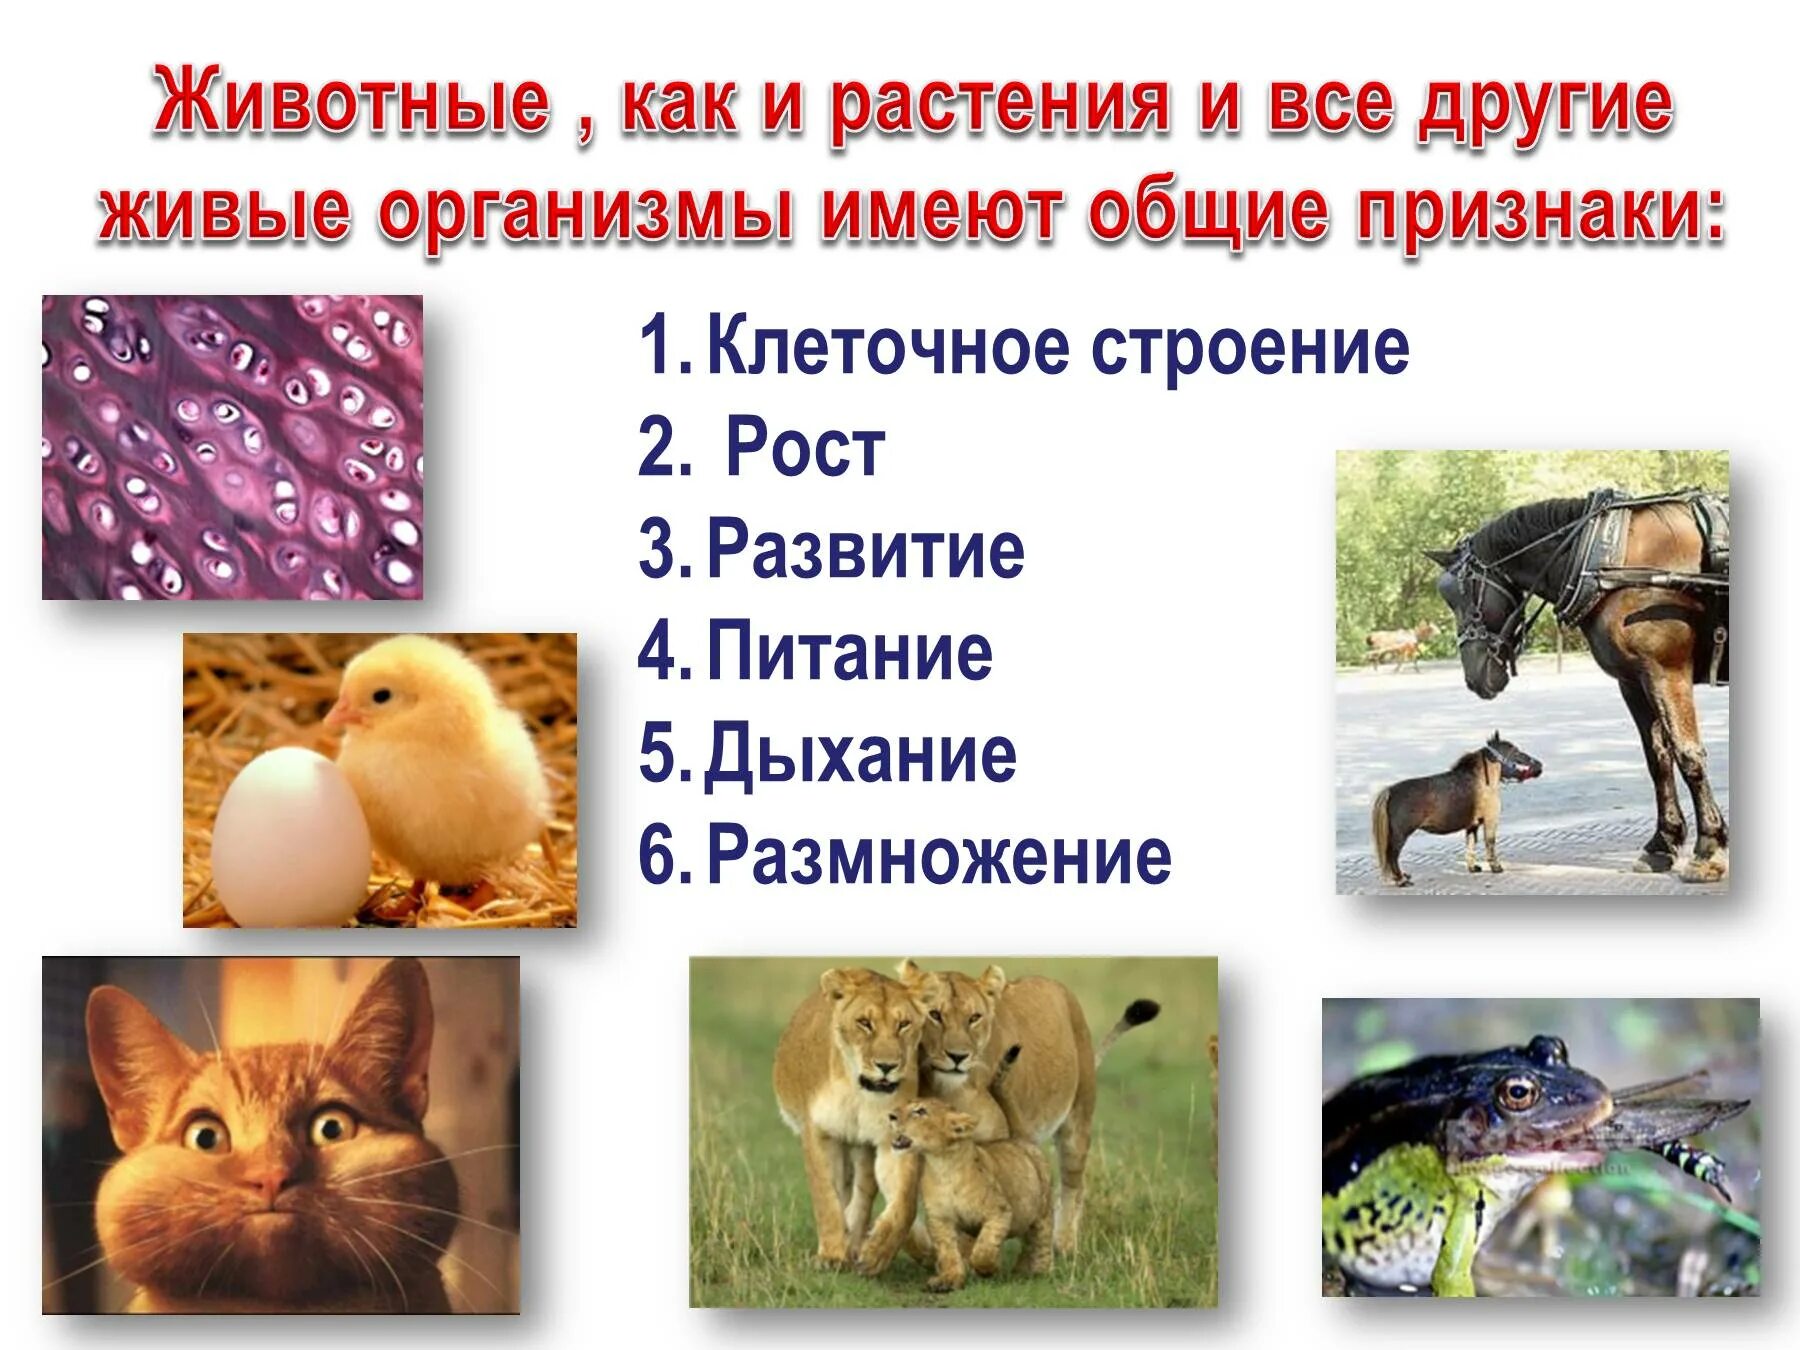 Признаки животных. Характерные особенности животных. Живые организмы животные. Общие признаки животных.